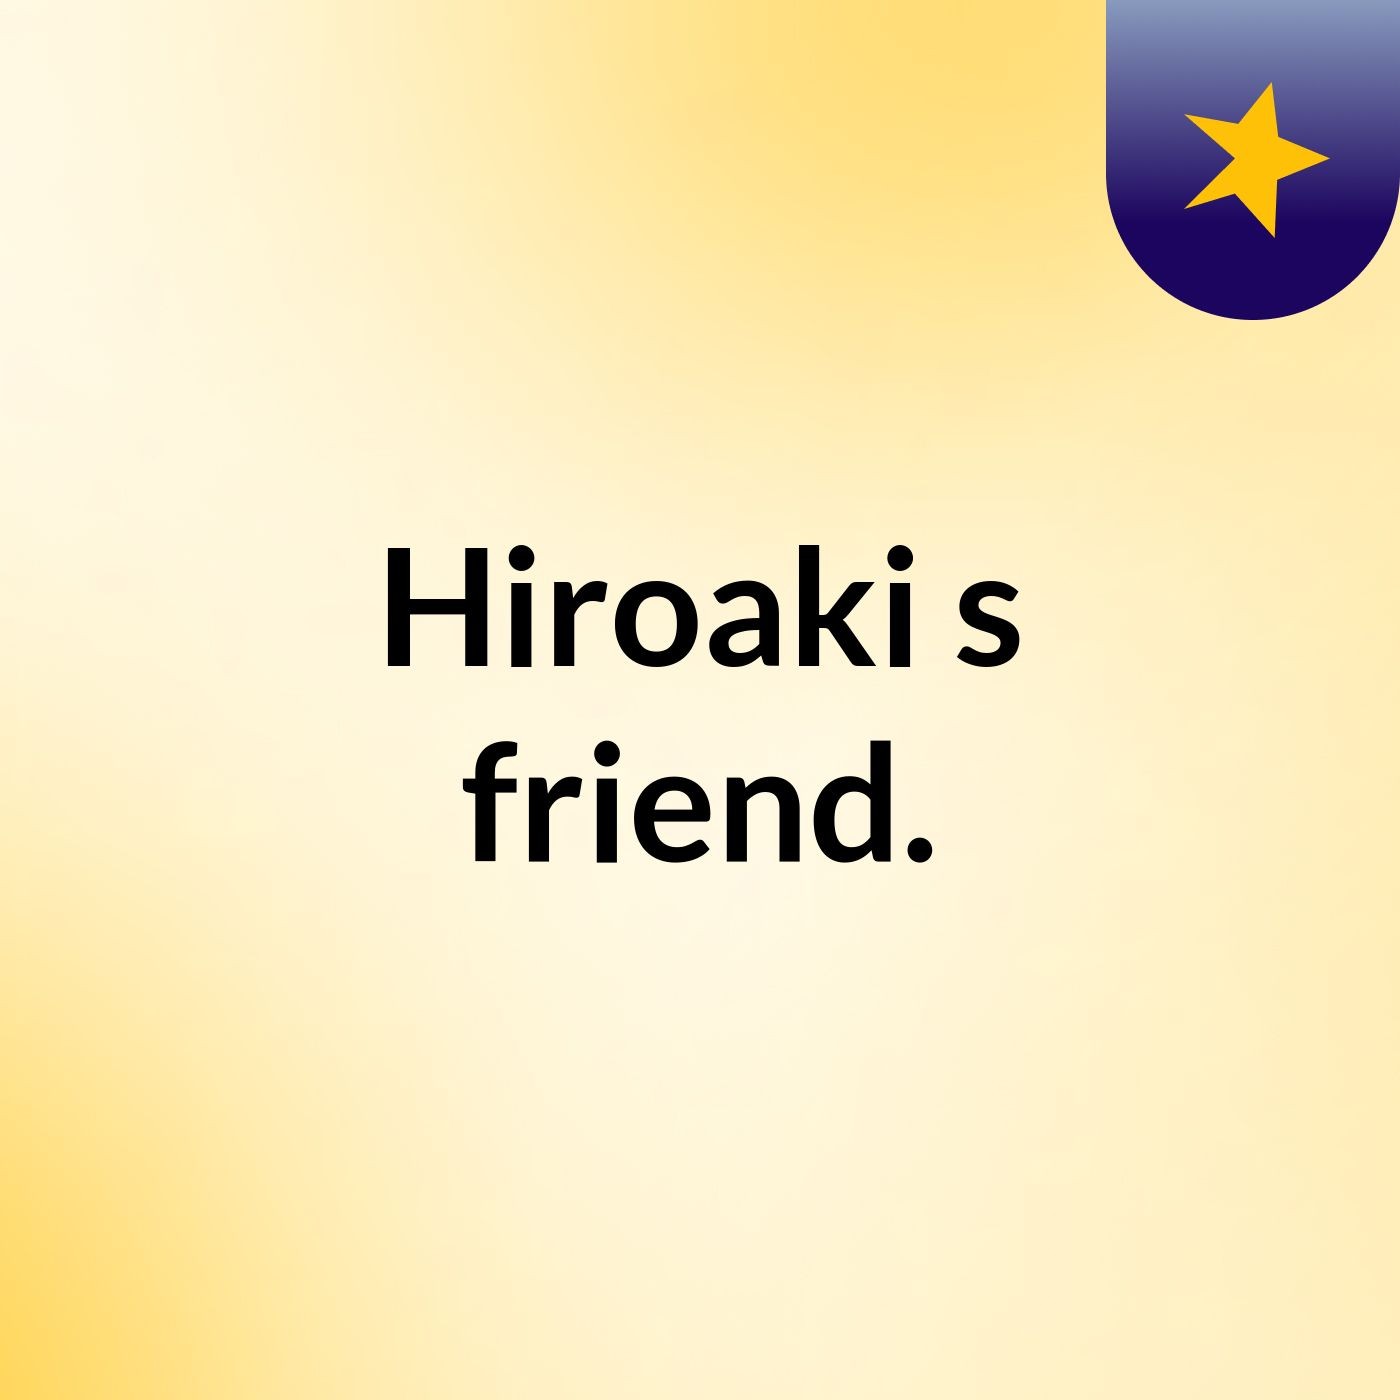 Hiroaki's friend.